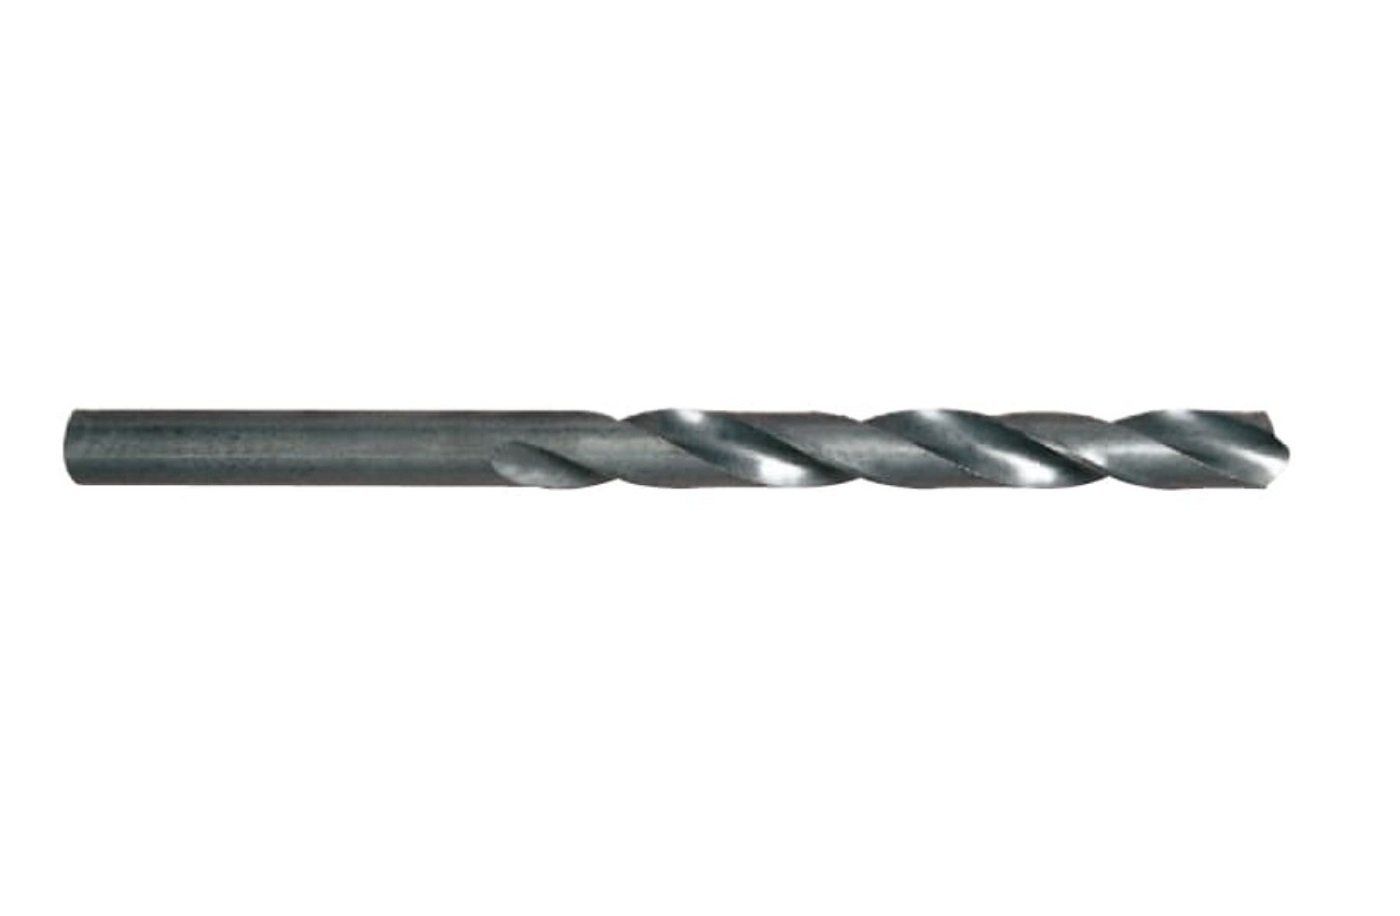 YG-1 HSS Metal Matkap Ucu 11.5 mm (D1105115)